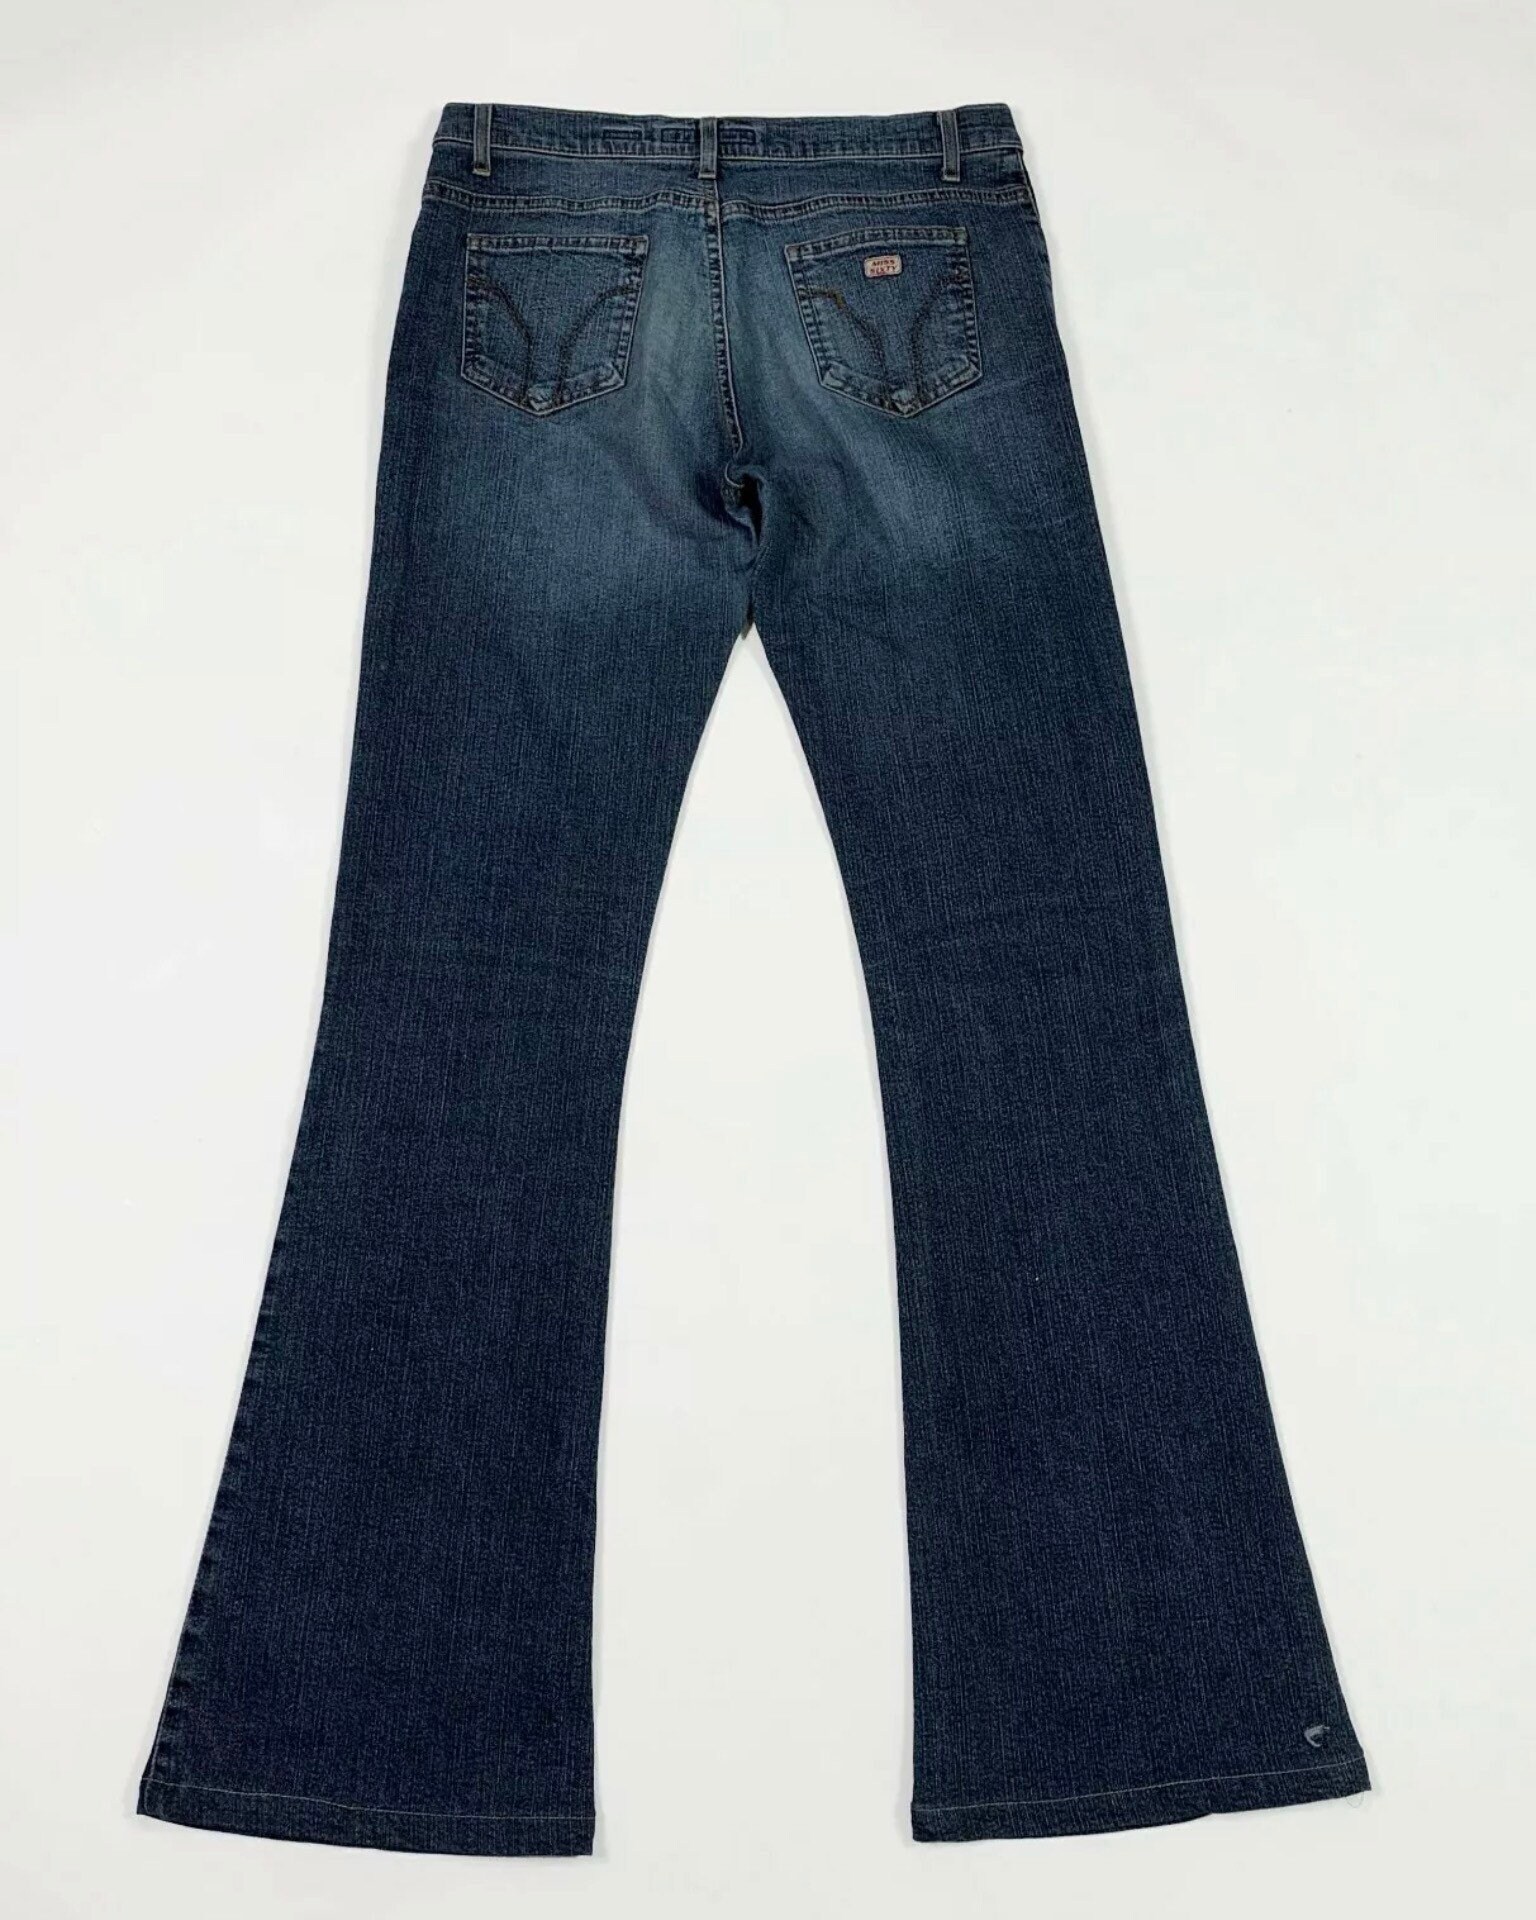 Miss sixty Tommy jeans donna usato bootcut zampa W28 Tg42 | Etsy